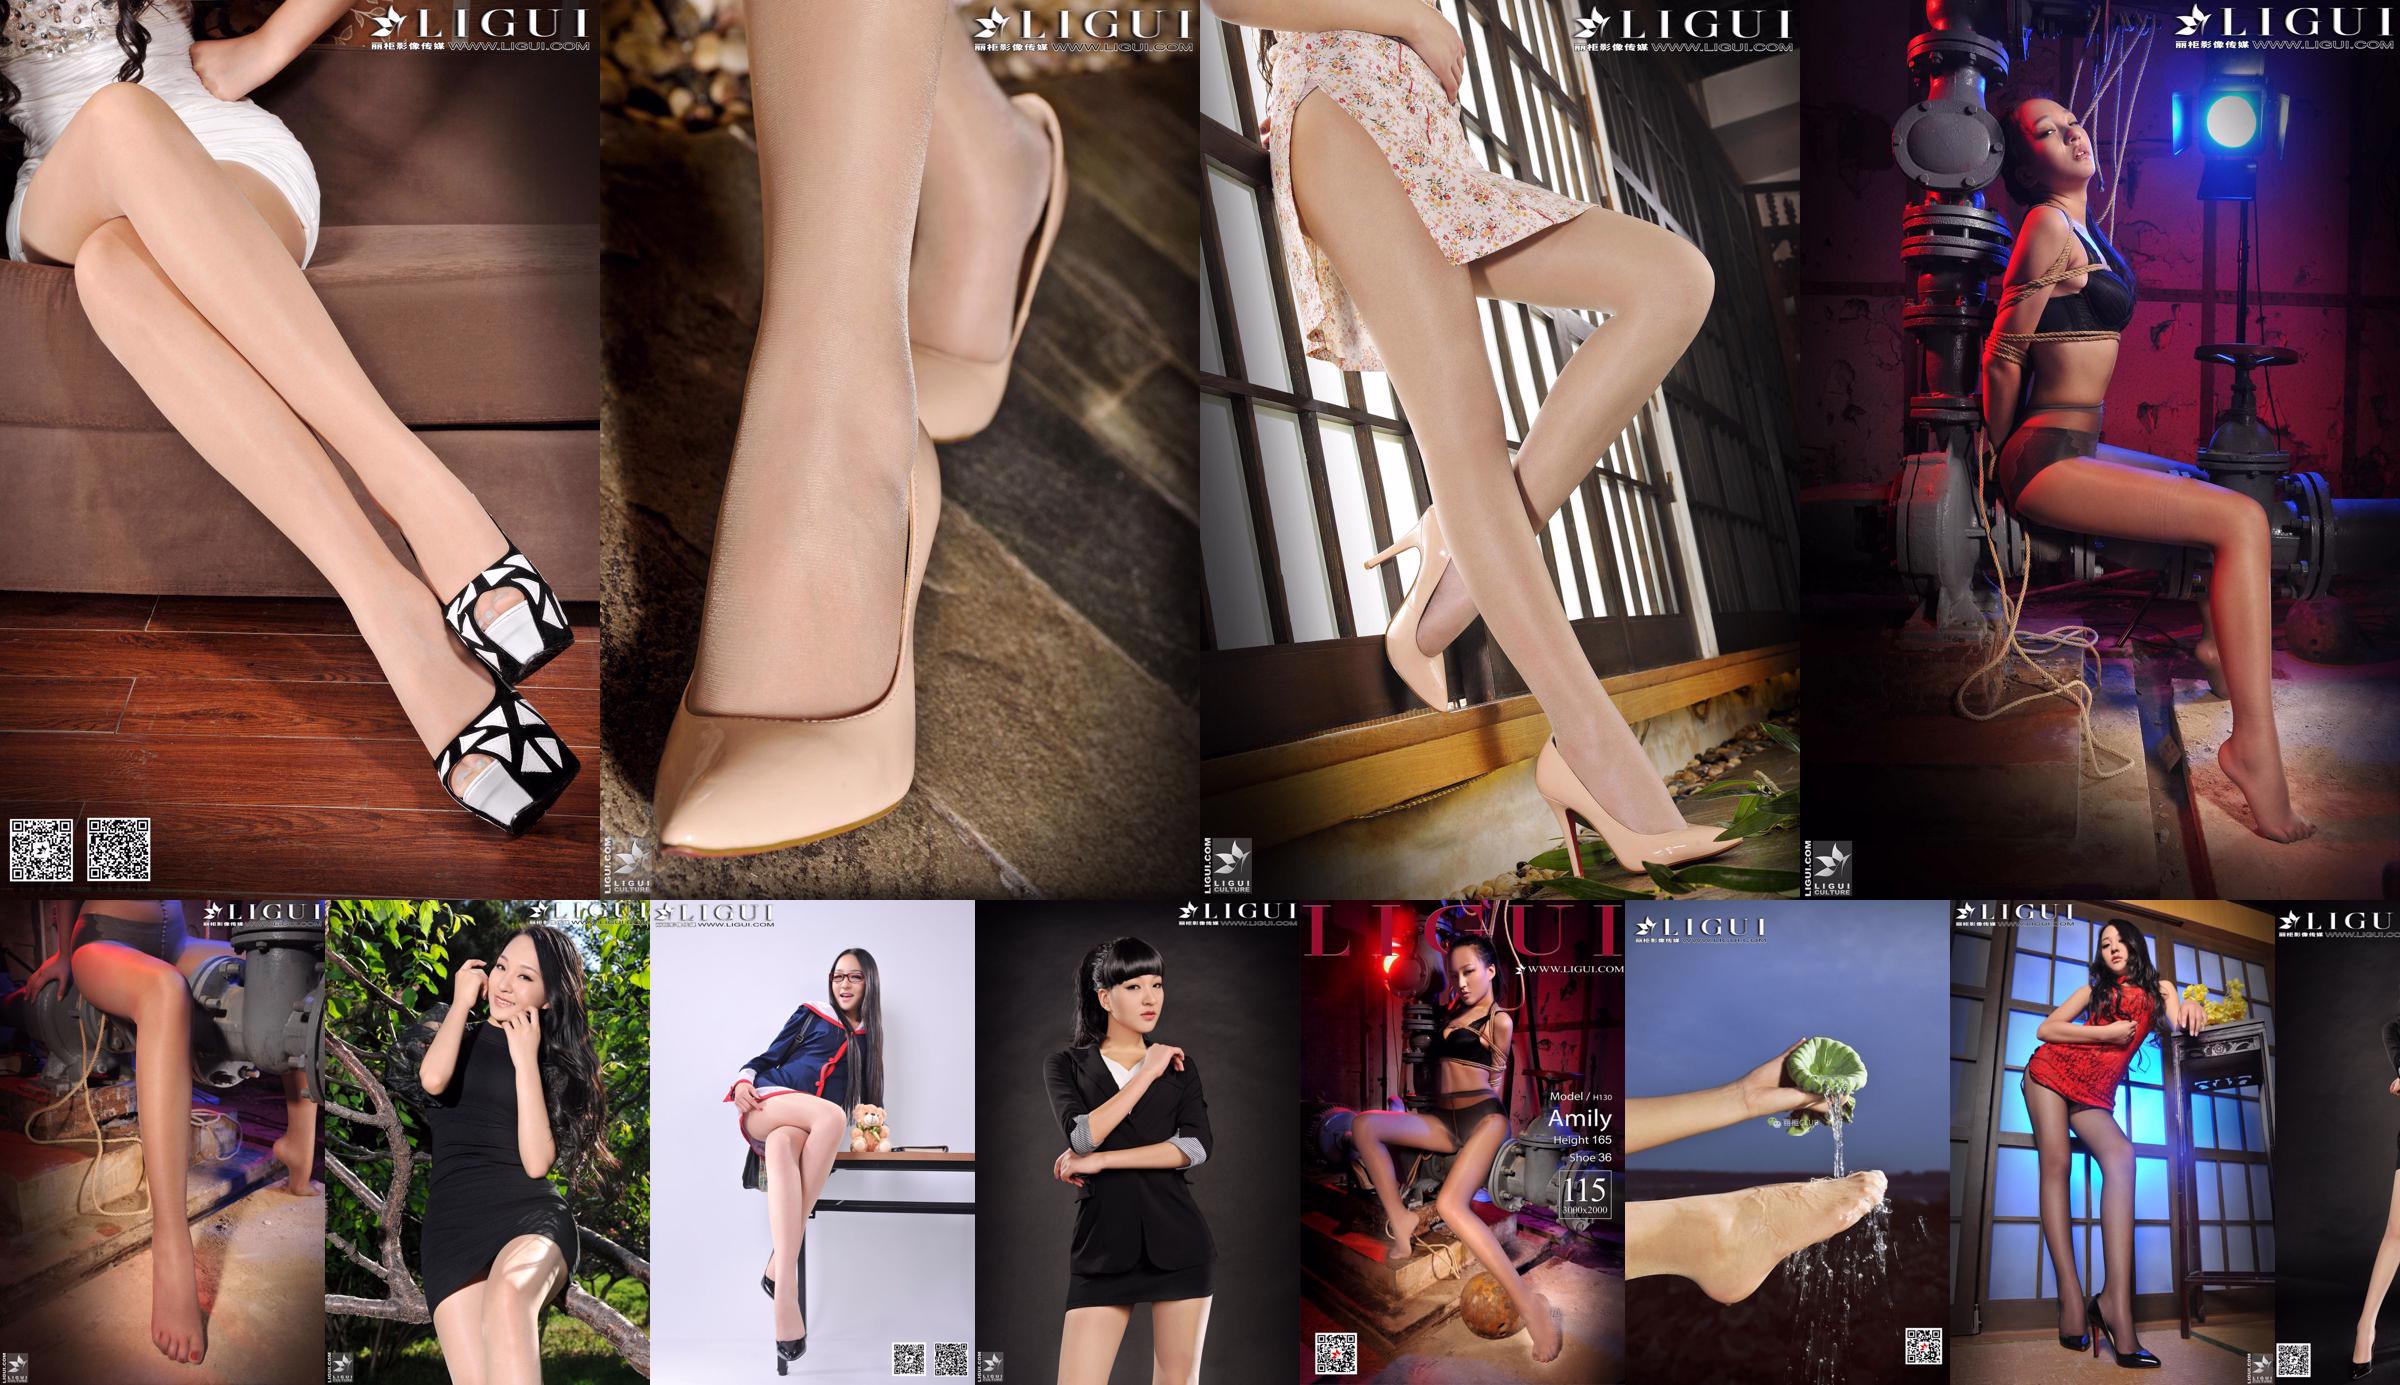 [丽柜贵足LiGui] Model Amily "OL Professional Wear High Heel Foot" Full Collection No.62cb5e Page 9